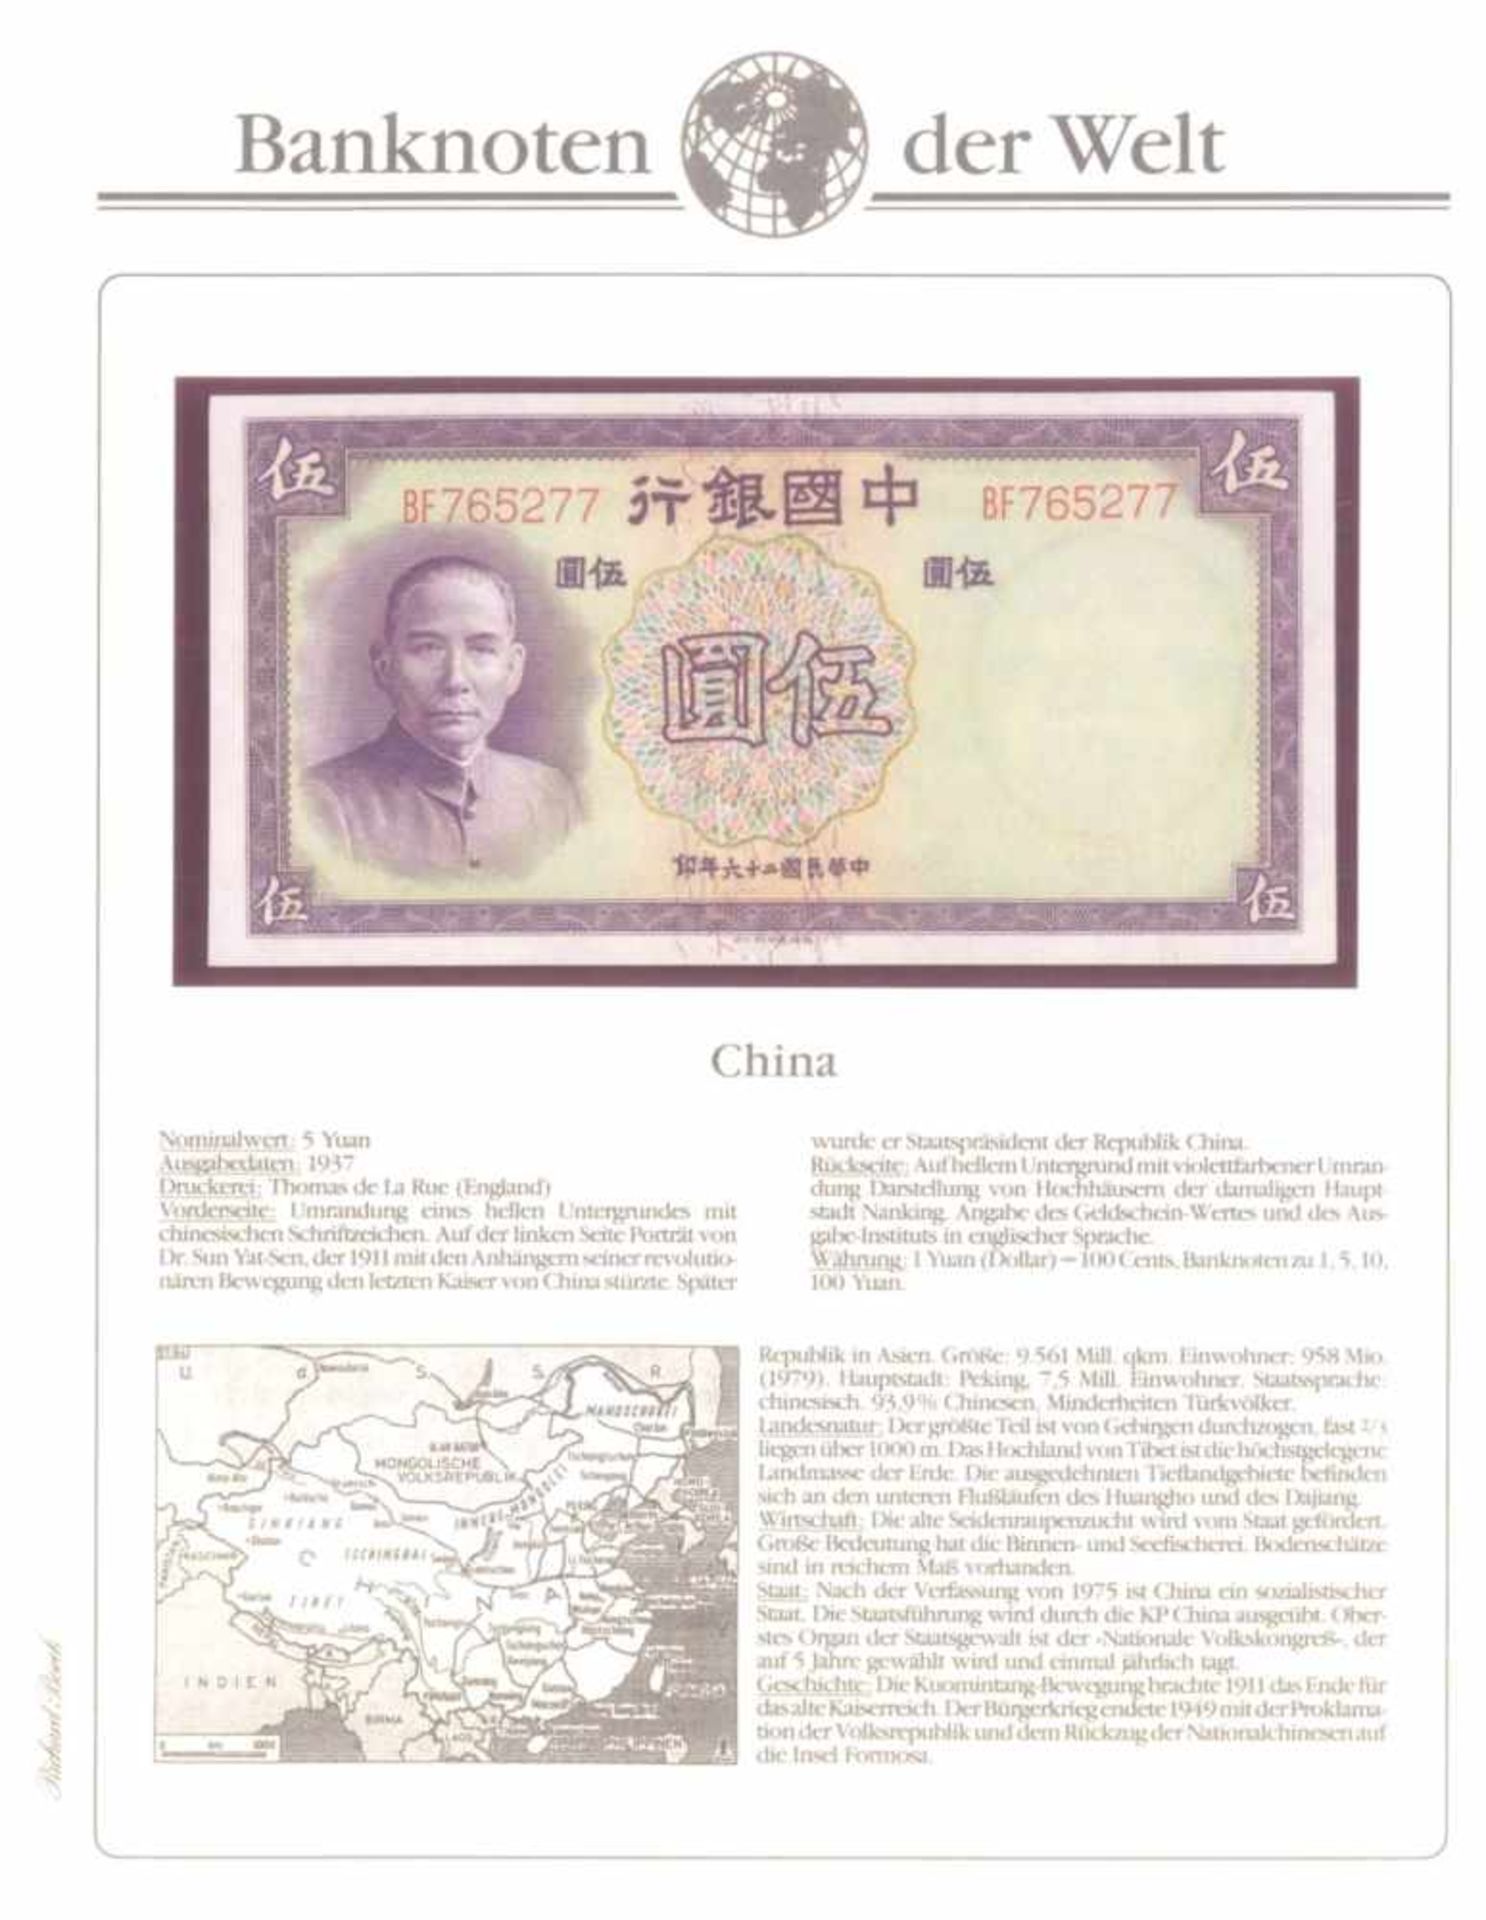 Banknoten der WeltBorek-Abo-Bezug. 2 Alben, prall gefüllt mit weit über100 Geldscheinen nebst - Bild 3 aus 4